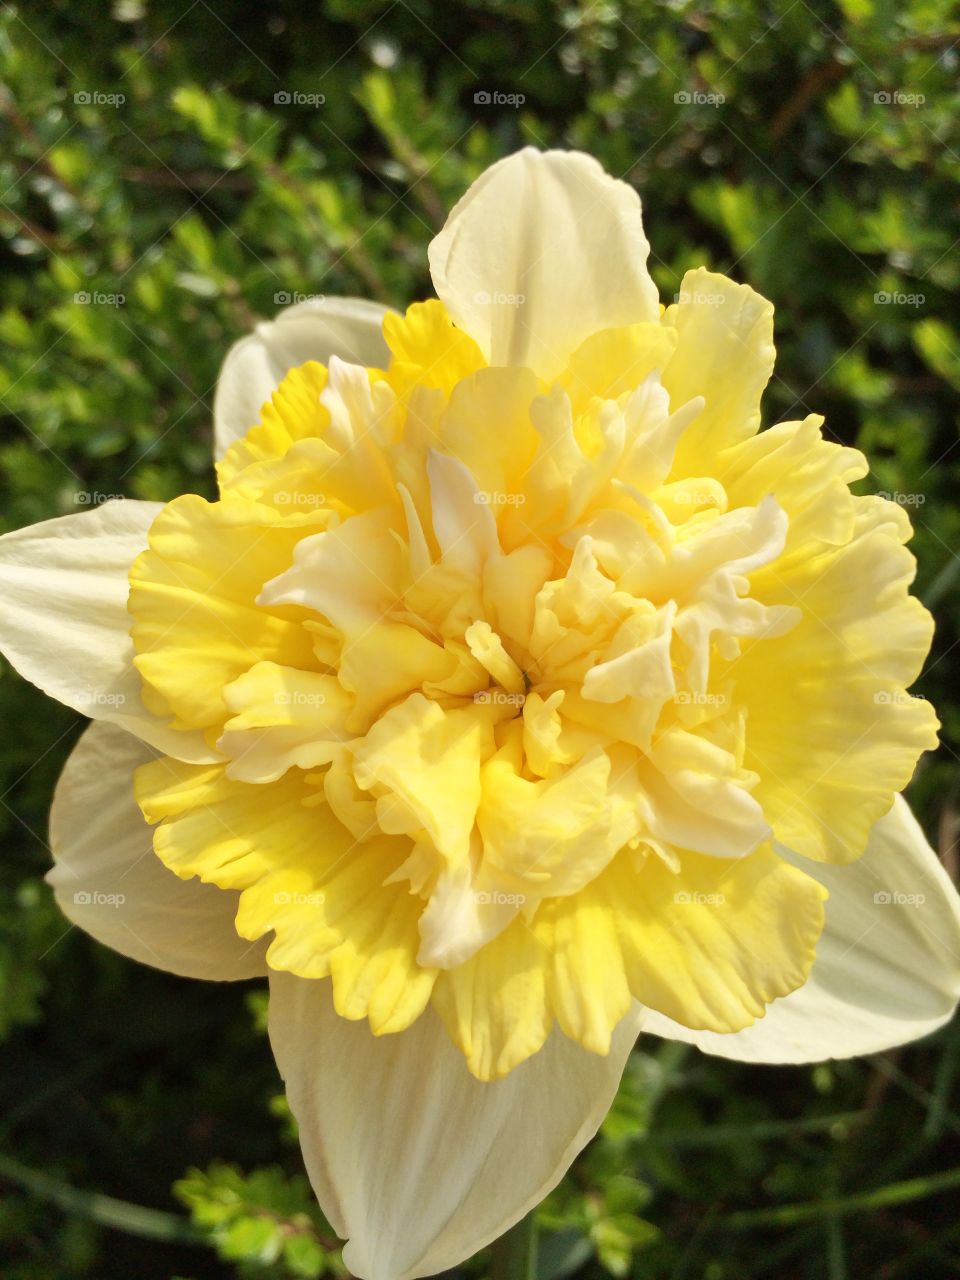 Yellow daffodil flower 